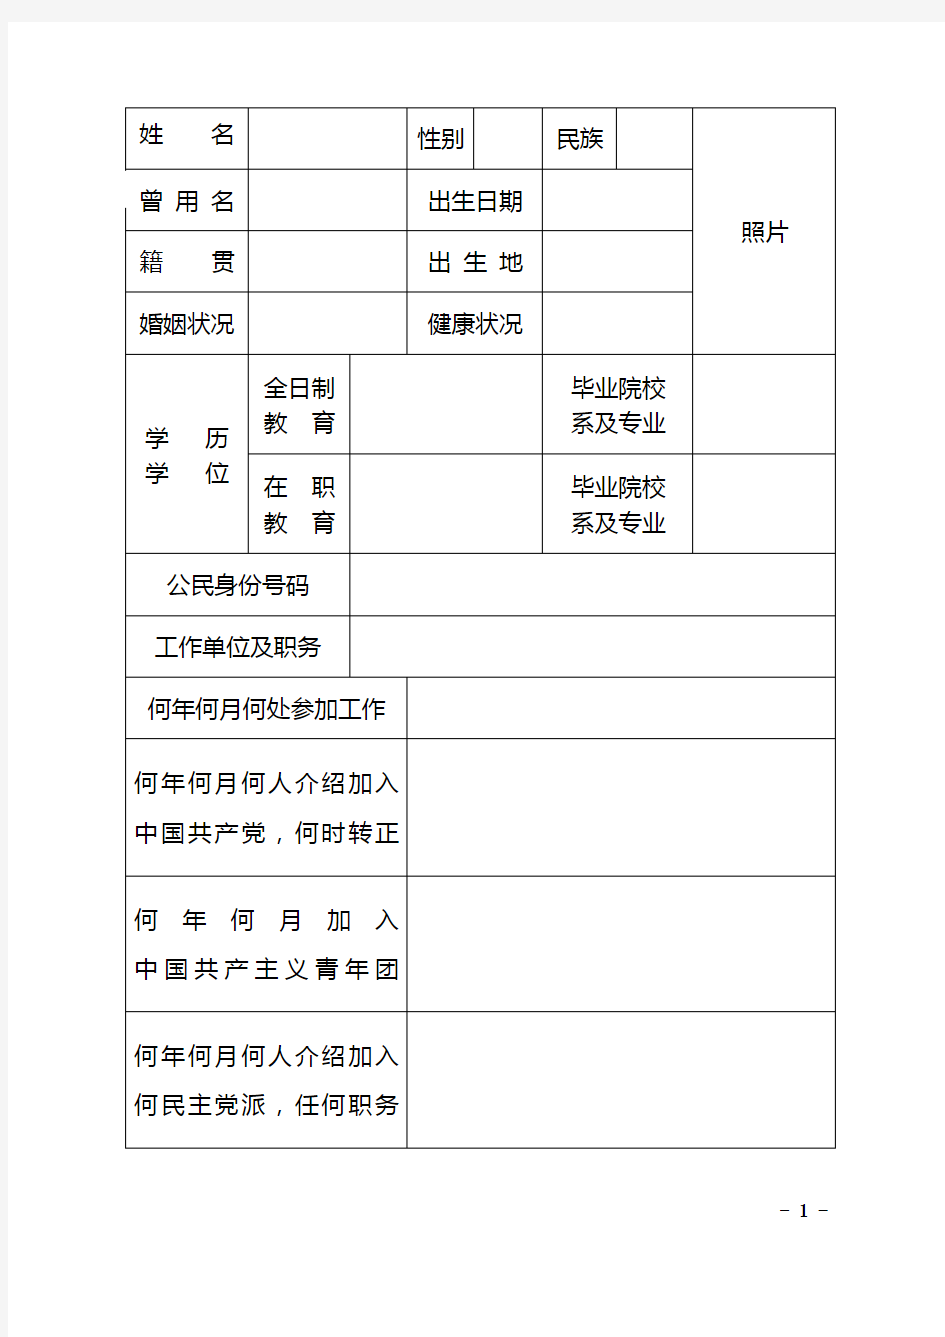 干部履历表(中组部2015年版)